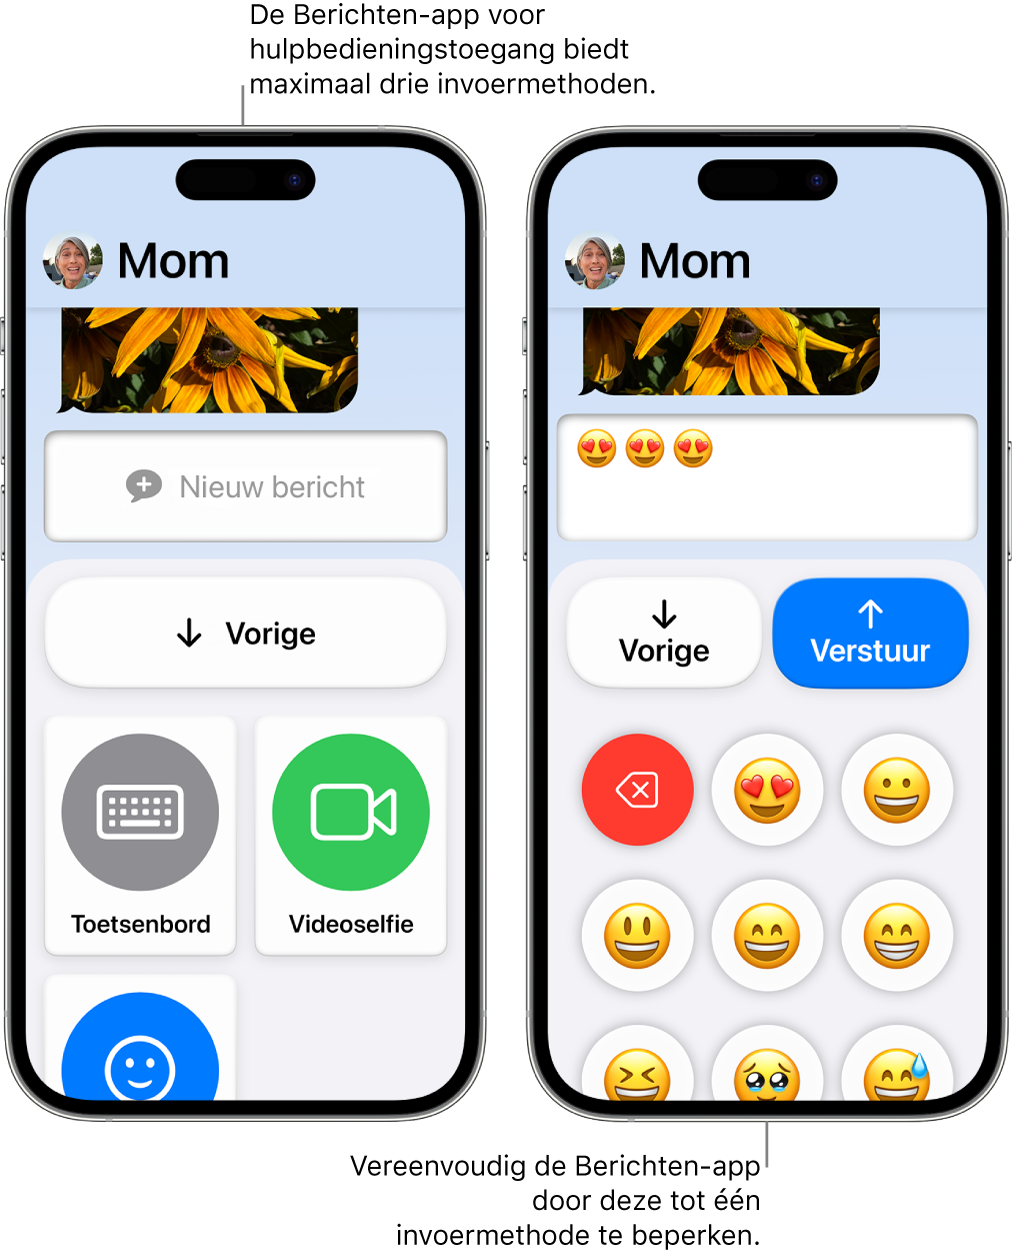 Twee iPhones met hulpbedieningstoegang. Op de ene iPhone is de Berichten-app te zien met invoermethoden waaruit de gebruiker kan kiezen, zoals 'Toetsenbord' en 'Videoselfie'. Op de andere is een bericht te zien dat met behulp van een emoji-toetsenbord wordt gestuurd.